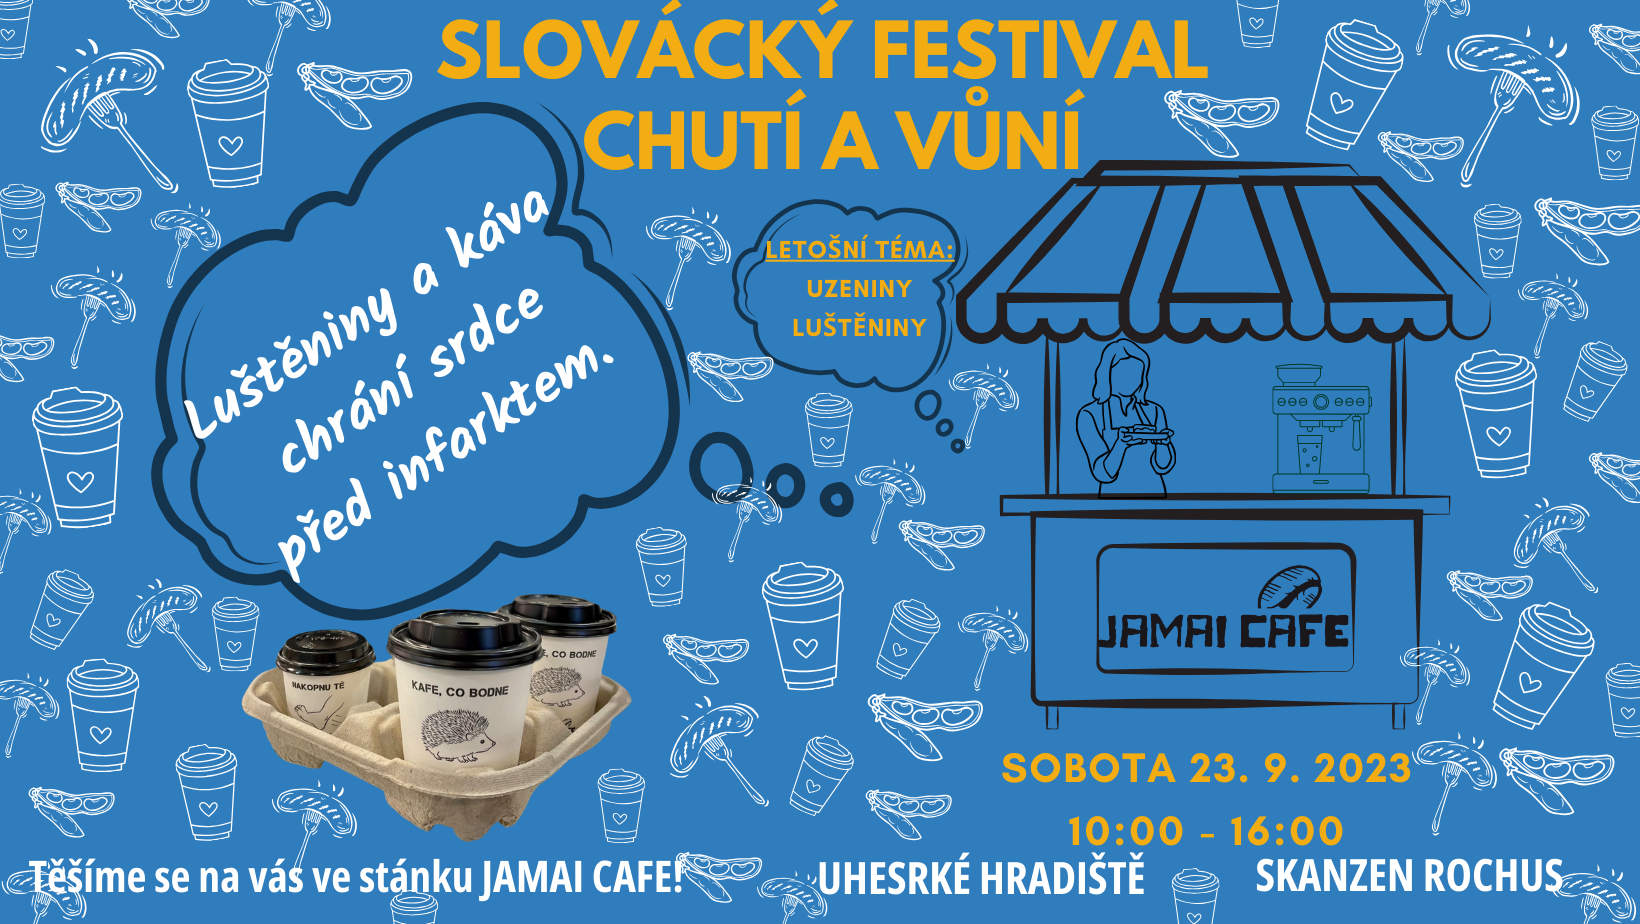 Zveme vás na Slovácký festival chutí a vůní 2023, v sobotu 23.9.2023!